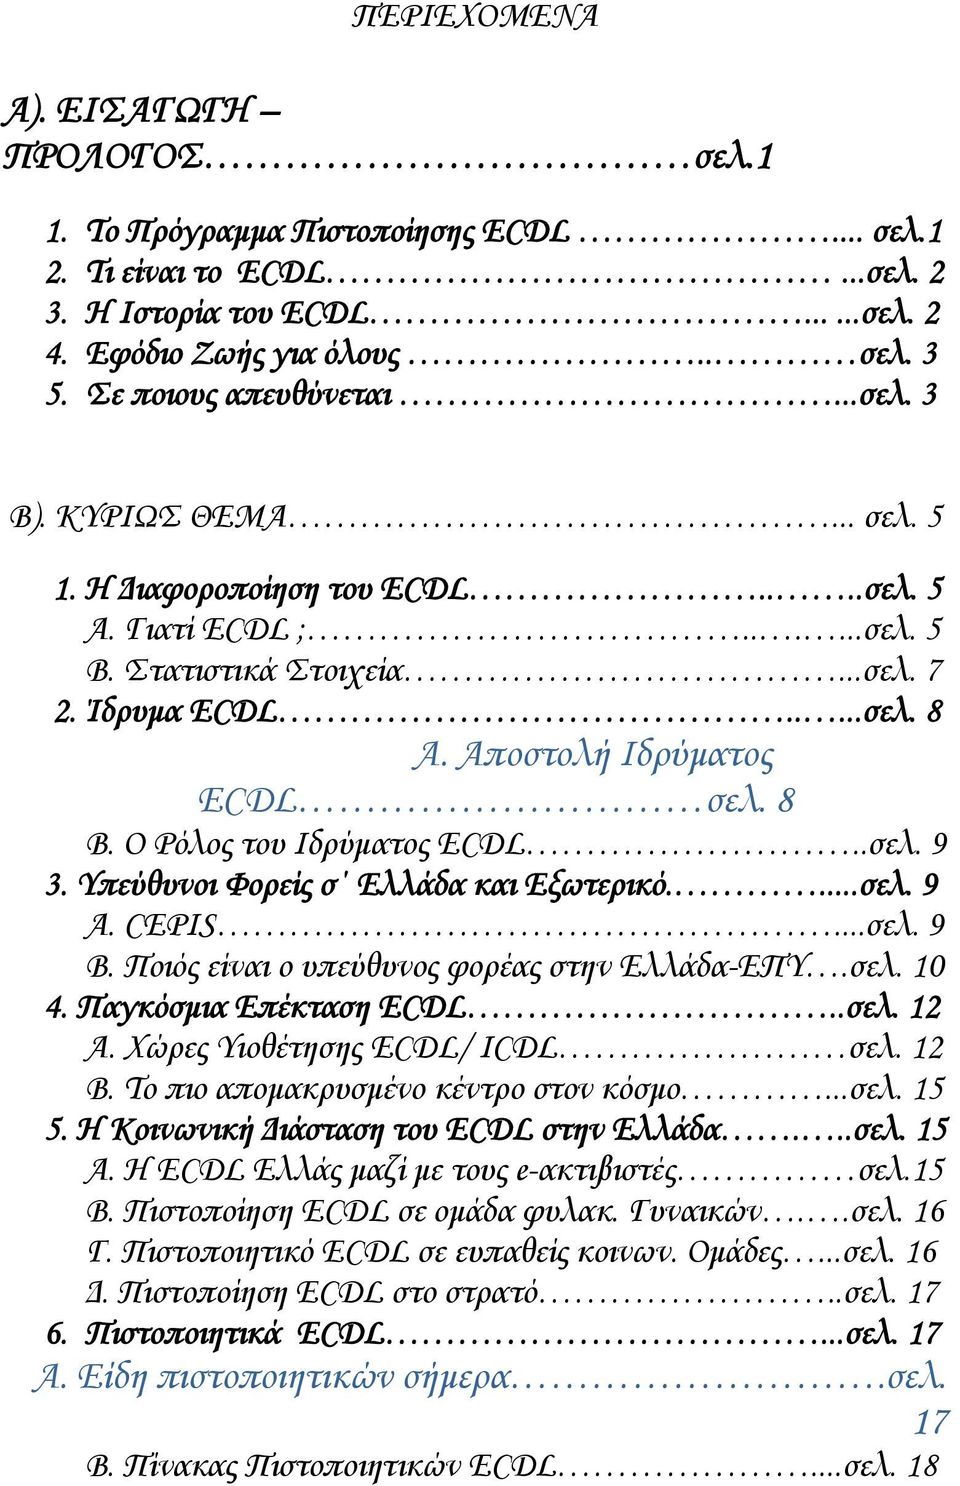 Αποστολή Ιδρύματος ECDL σελ. 8 Β. Ο Ρόλος του Ιδρύματος ECDL..σελ. 9 3. Υπεύθυνοι Φορείς σ Ελλάδα και Εξωτερικό....σελ. 9 Α. CEPIS...σελ. 9 Β. Ποιός είναι ο υπεύθυνος φορέας στην Ελλάδα-ΕΠΥ.σελ. 10 4.